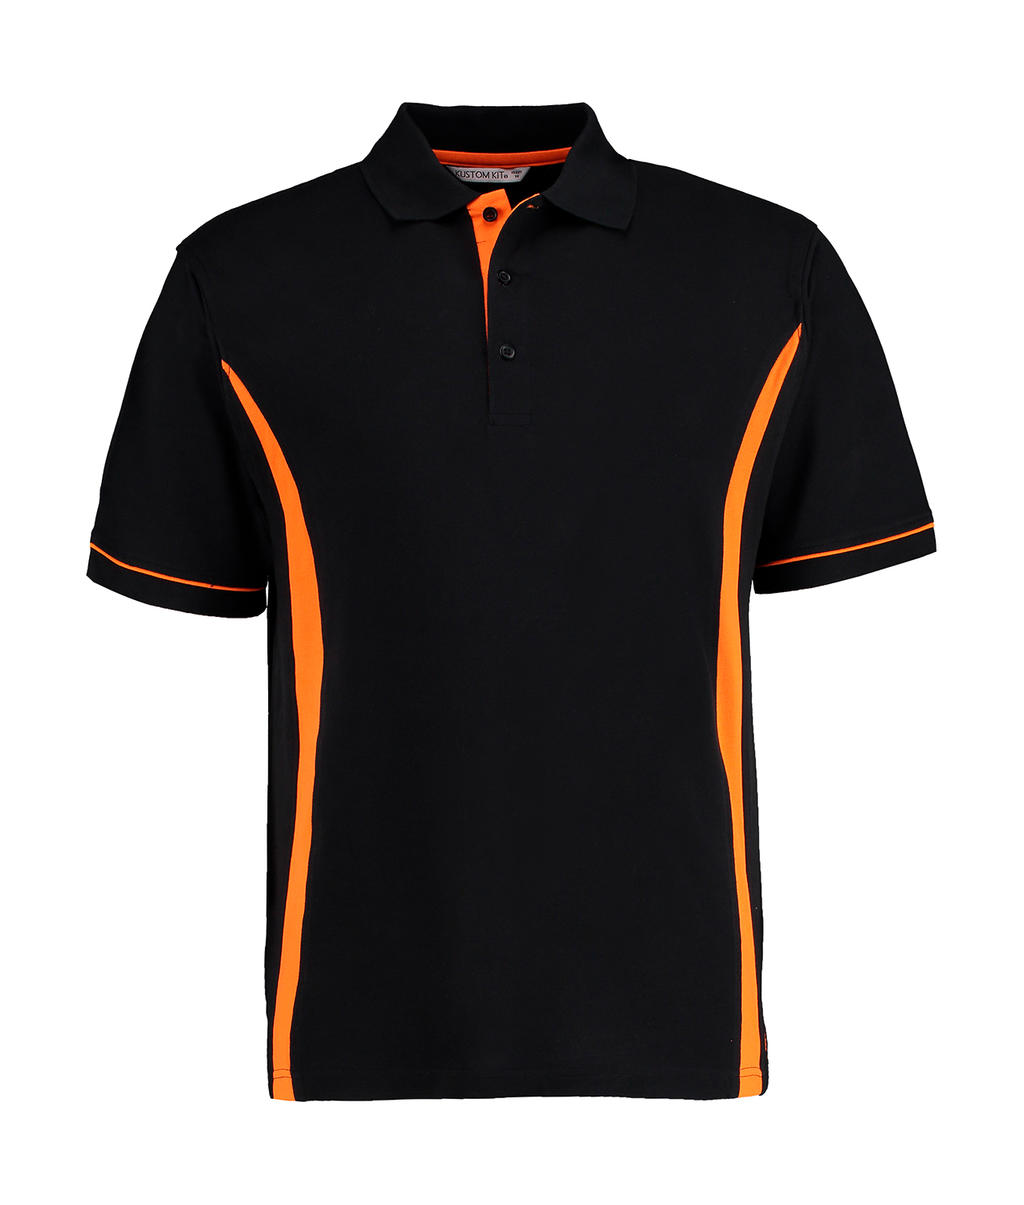  Scottsdale Polo in Farbe Black/Orange